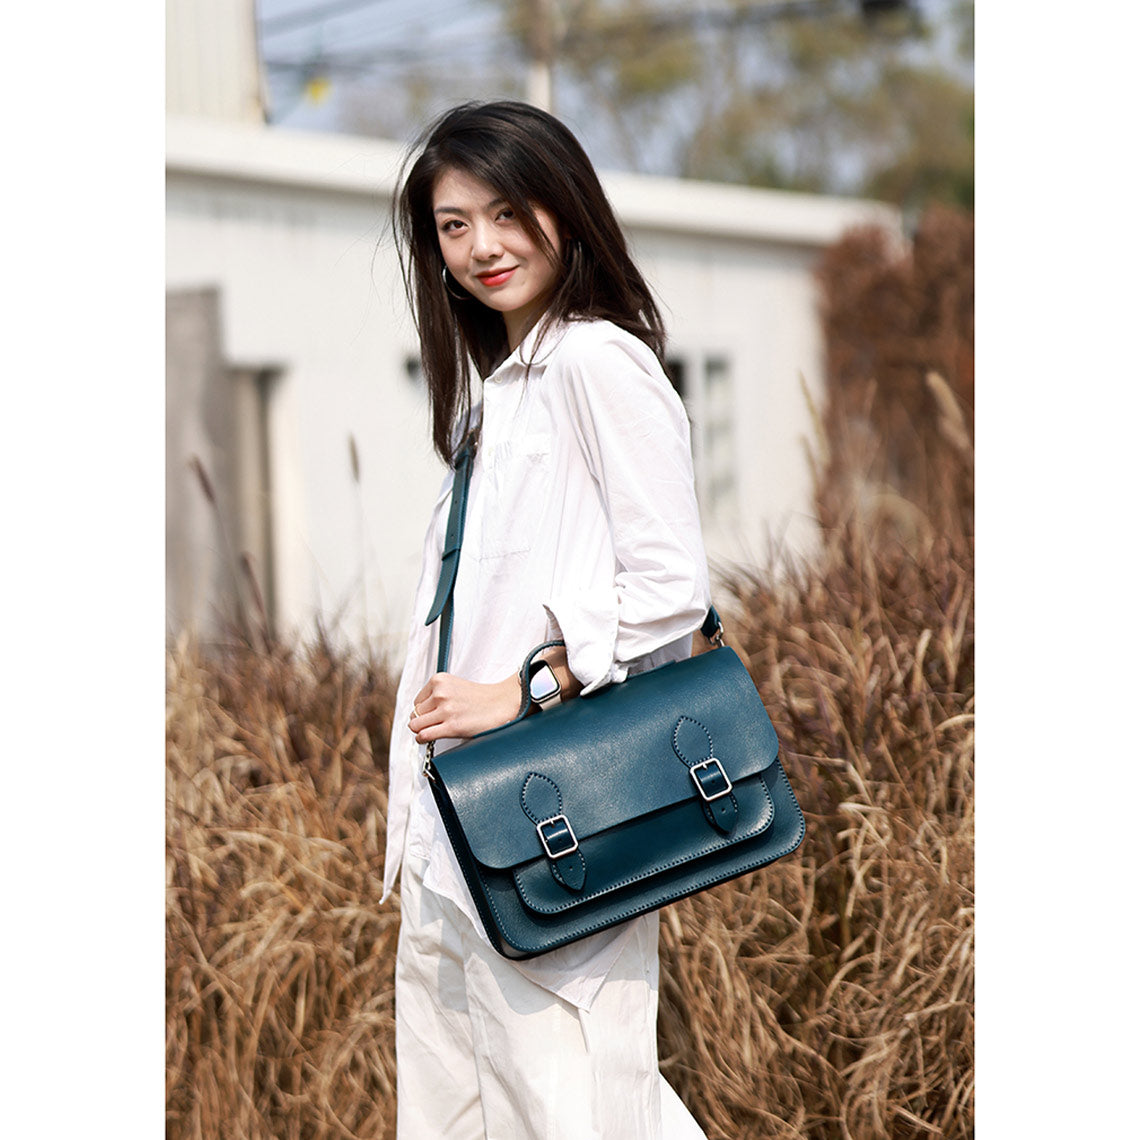 Peacock Blue Leather Satchel Shoulder Bag | Handmade Large Crossbody Bag Work Bag Briefcase for Women - POPSEWING™